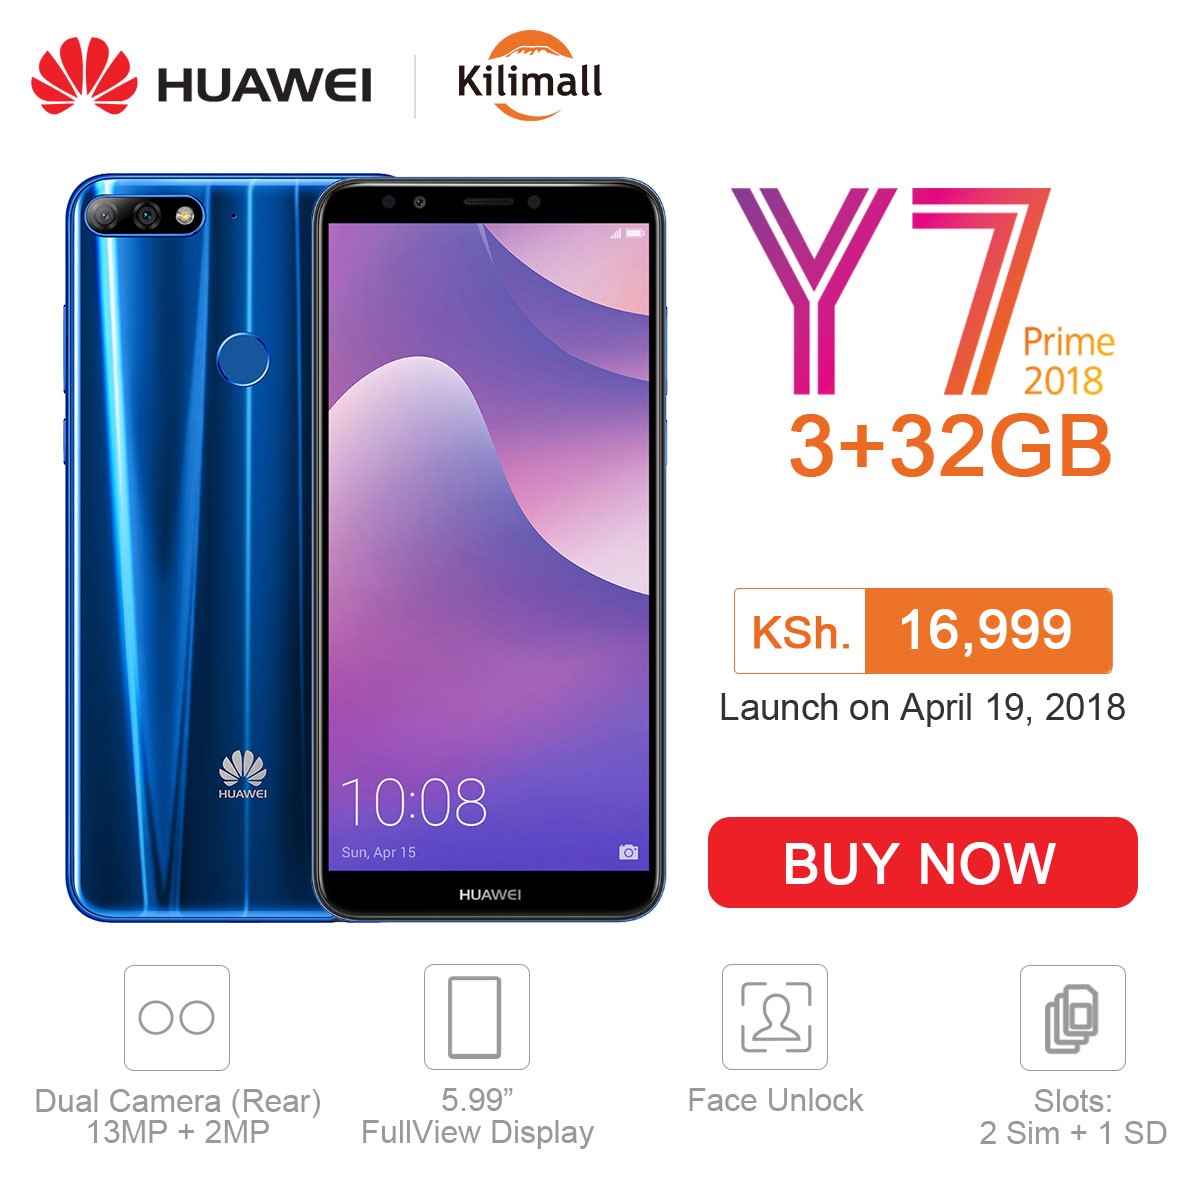 Huawei Y7 Prime 2018 Kenya